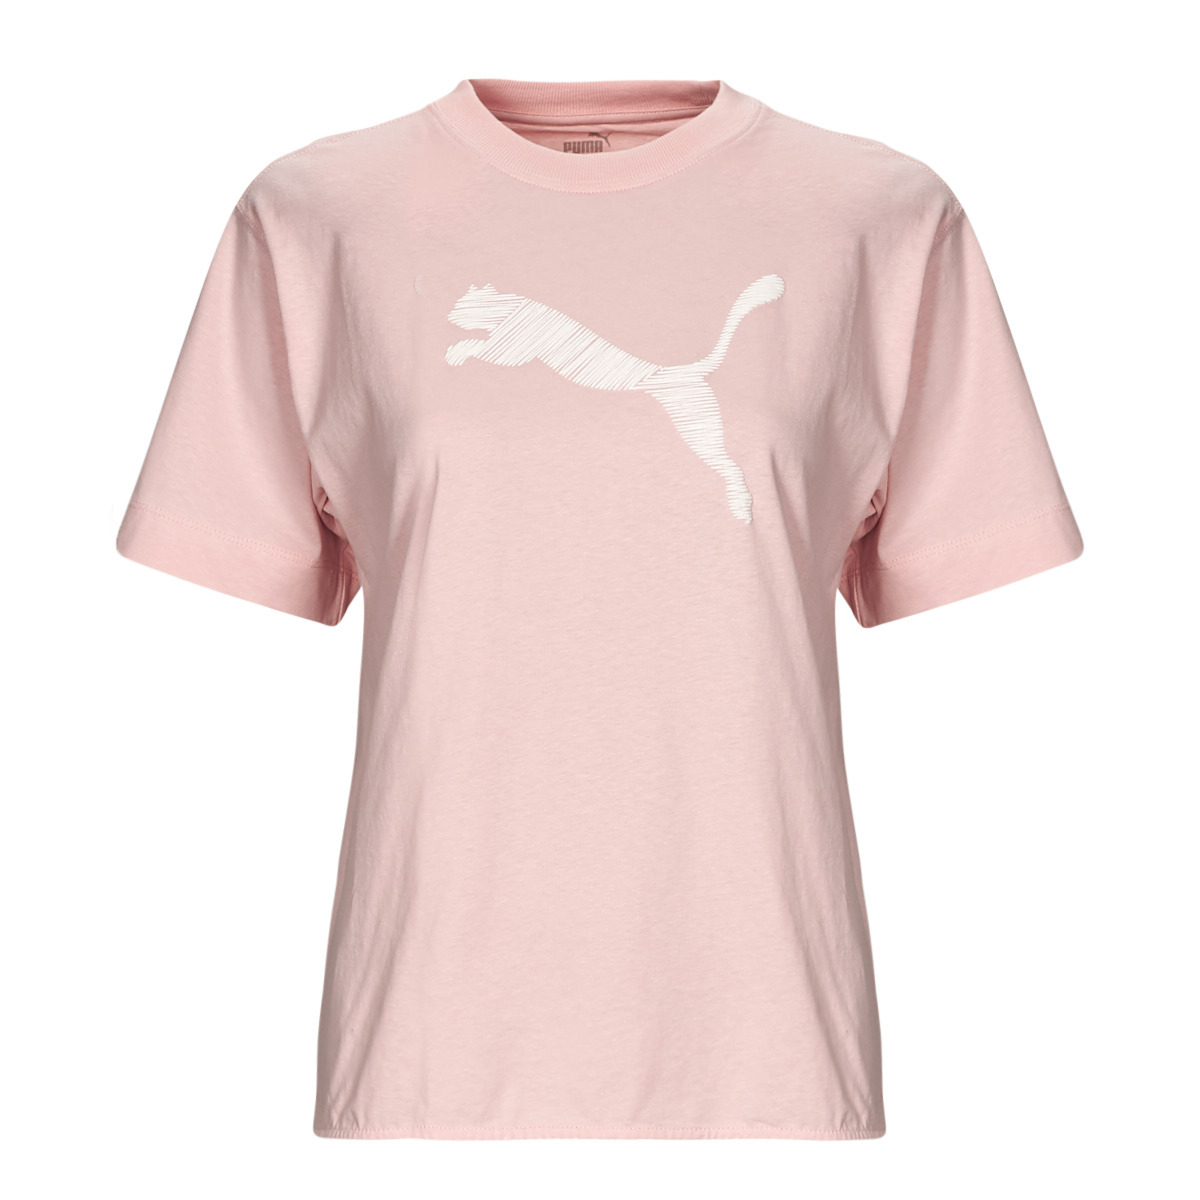 Puma - Woman T-Shirt Pink at Spartoo GOOFASH